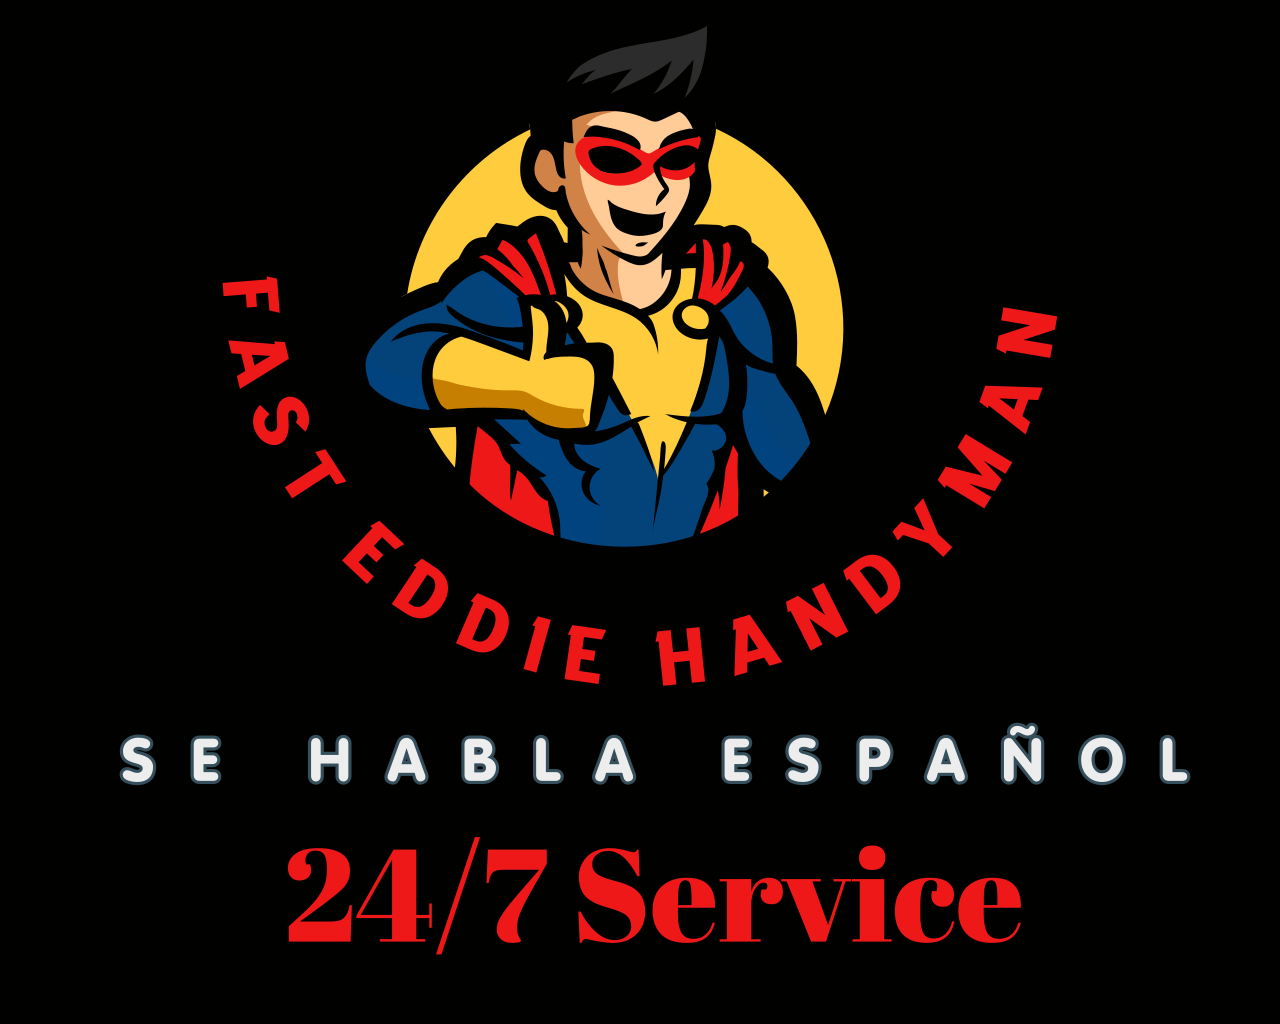 Fast Eddie Garage Door & Handyman LLC's logo